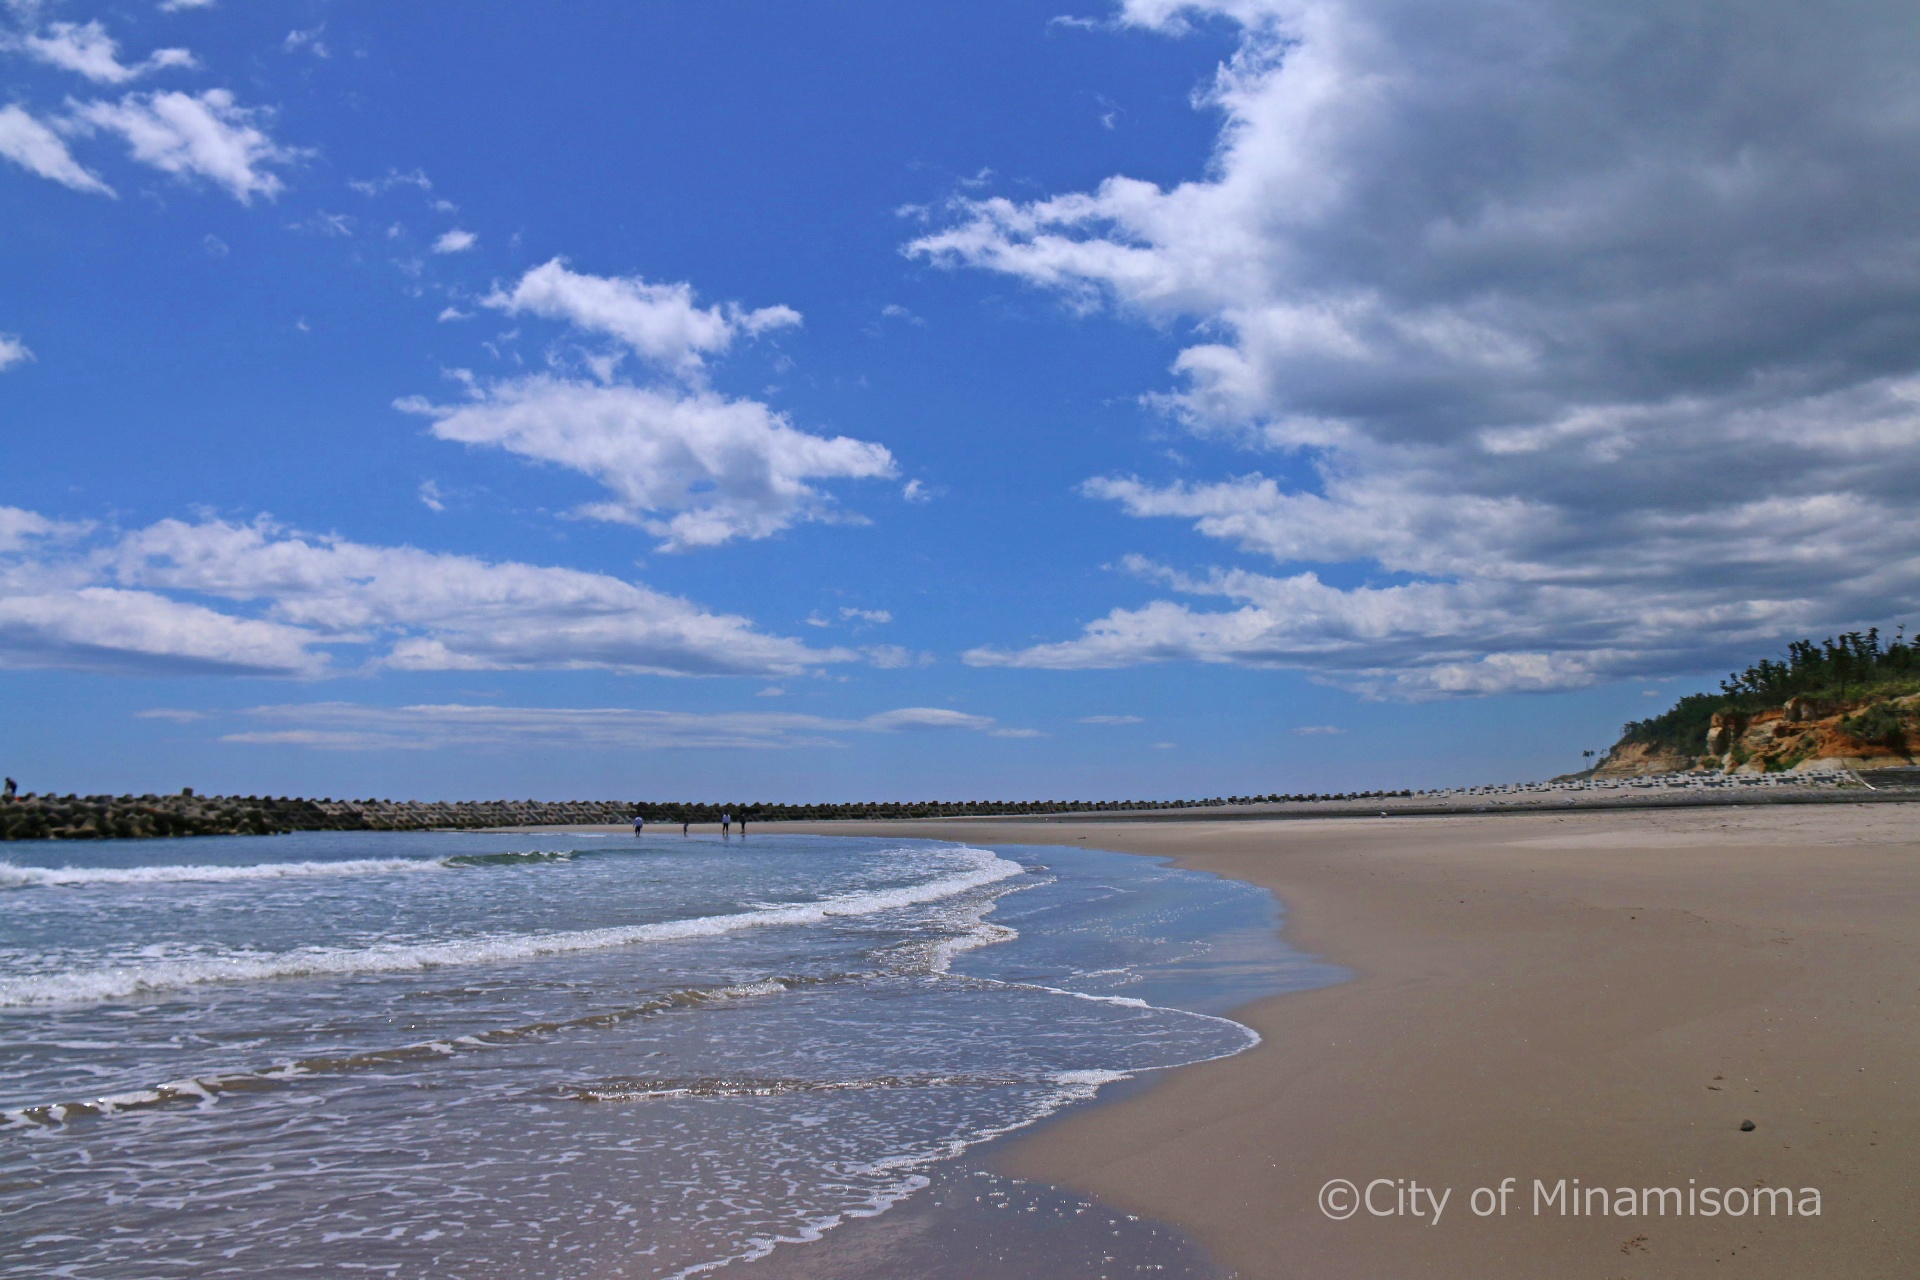 良く晴れた日の北泉海岸の様子。青い空に白い雲が浮かび、遠くの波打ち際を数名の人が歩いている。